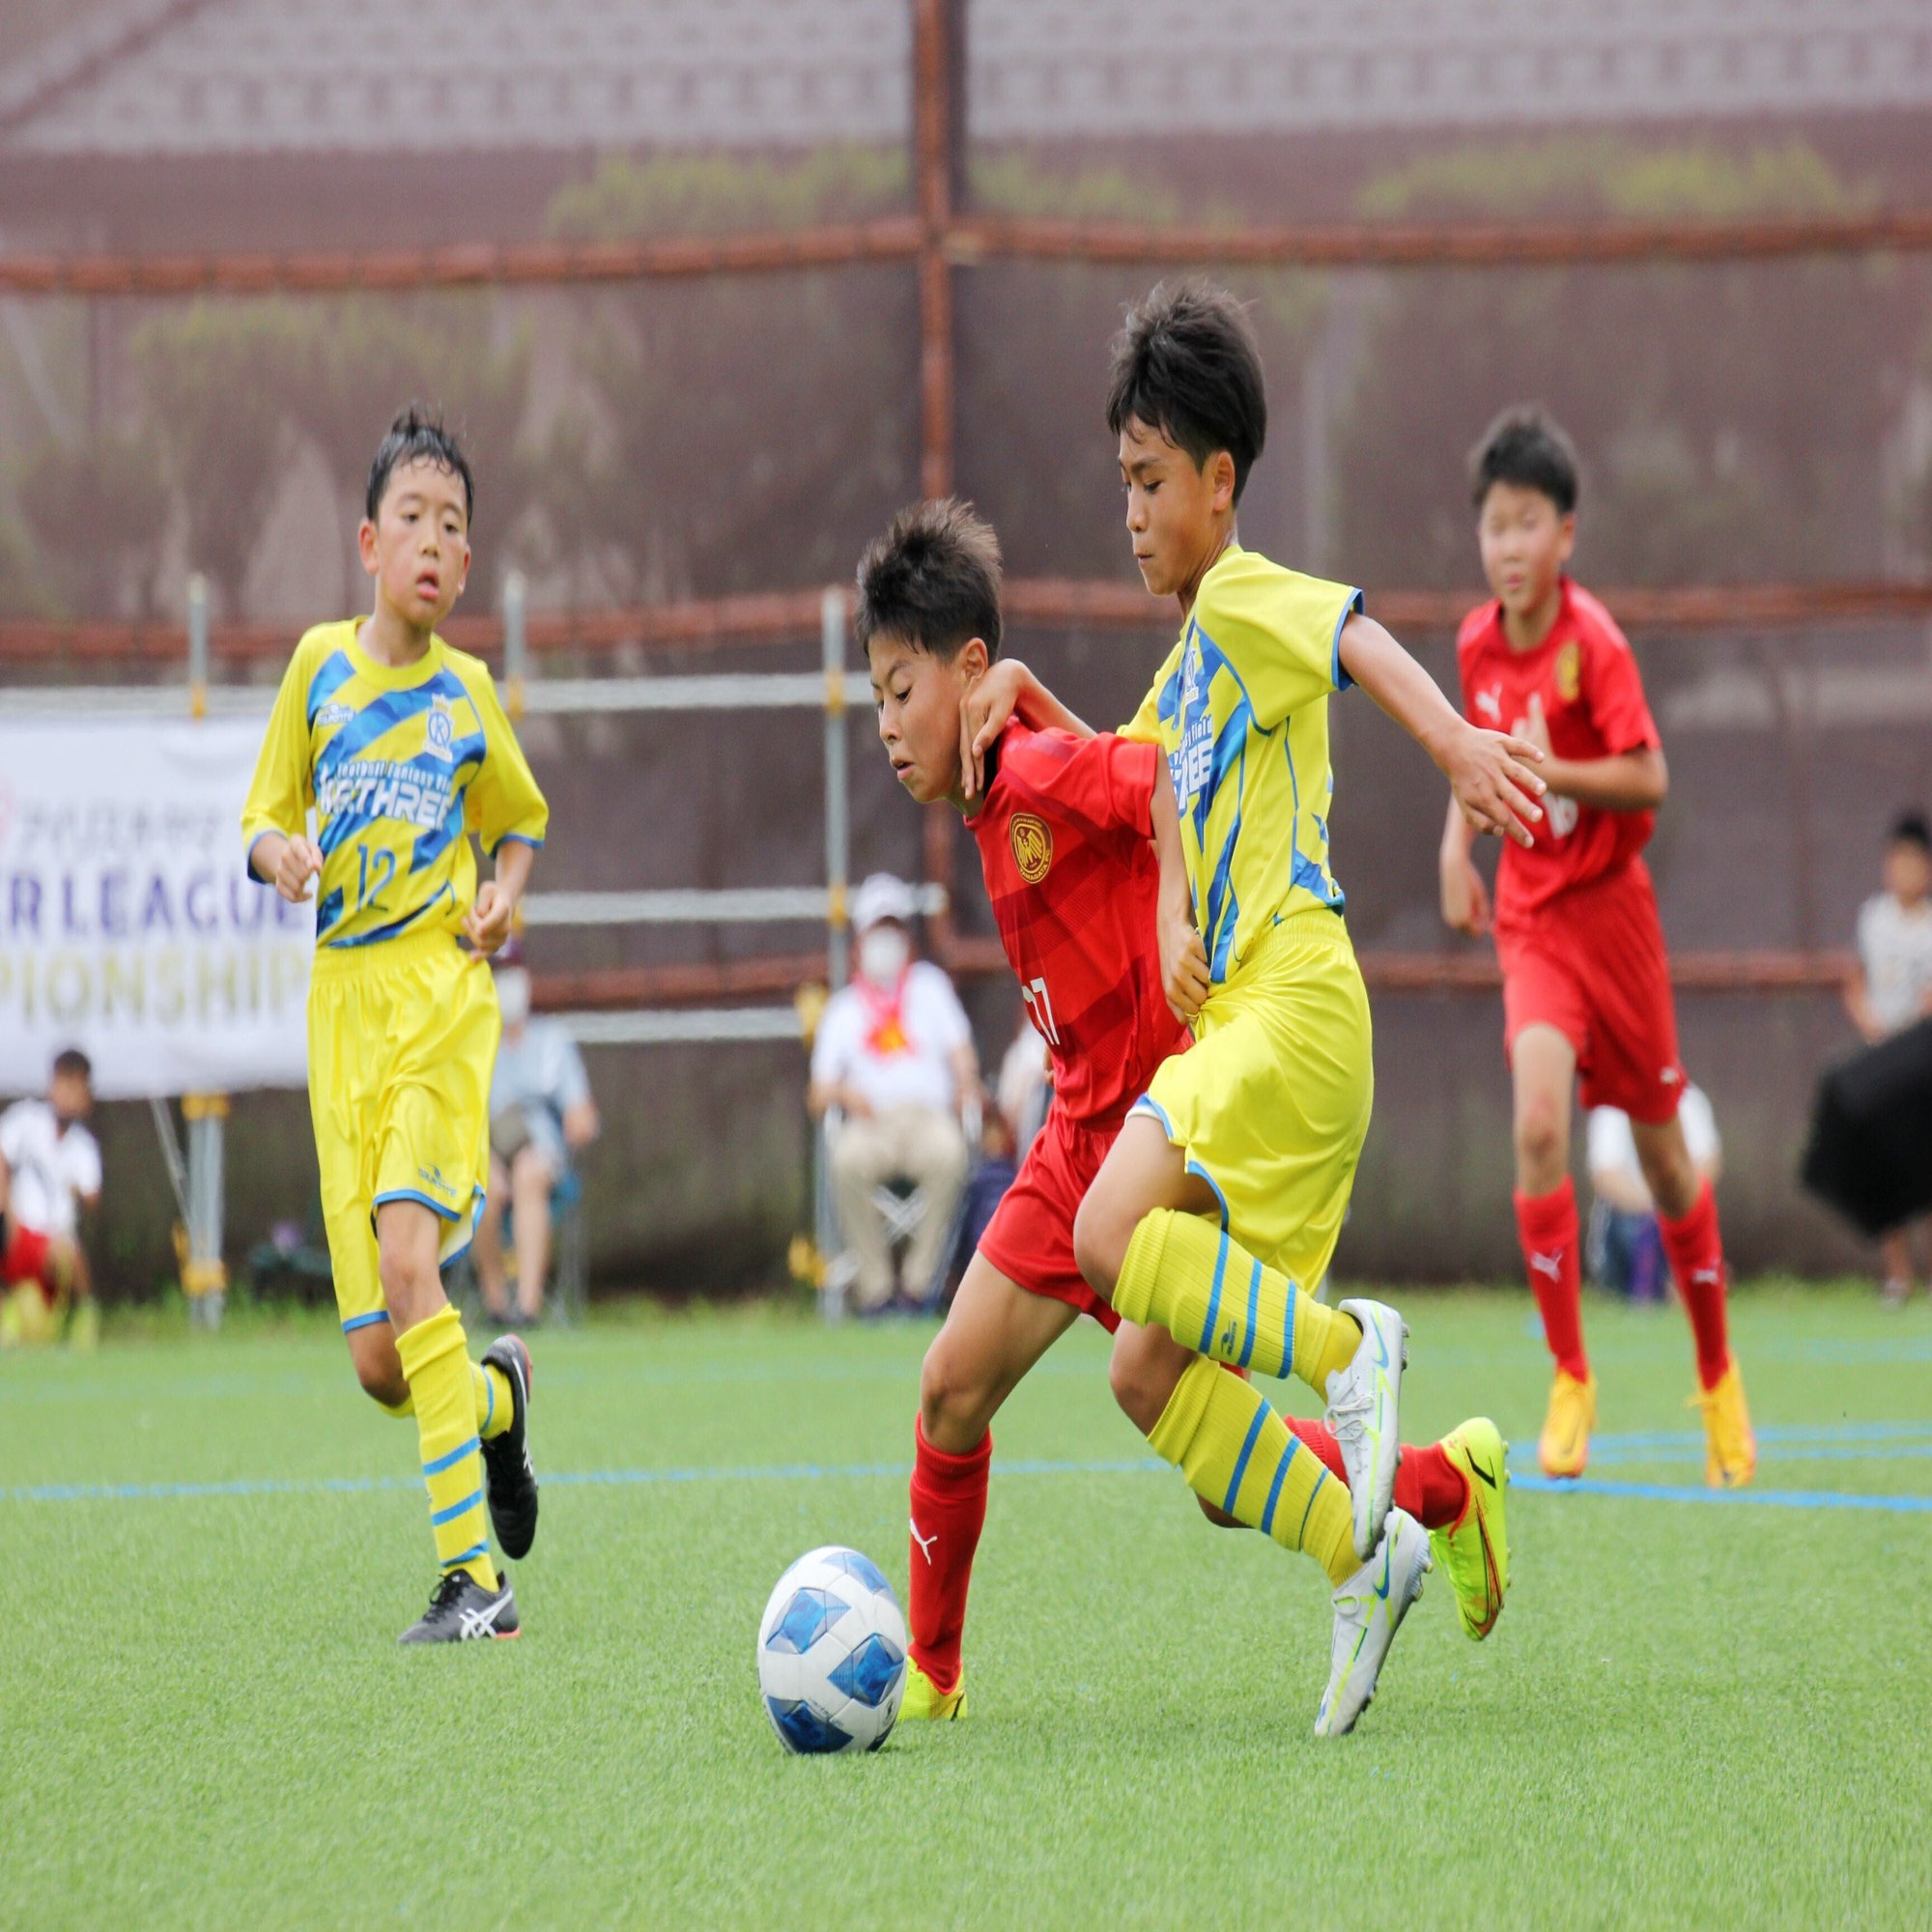 全国規模のサッカー大会 アイリスオーヤマプレミアリーグｕ 11 女川に36チーム600人 石巻days 石巻日日新聞社公式 Note